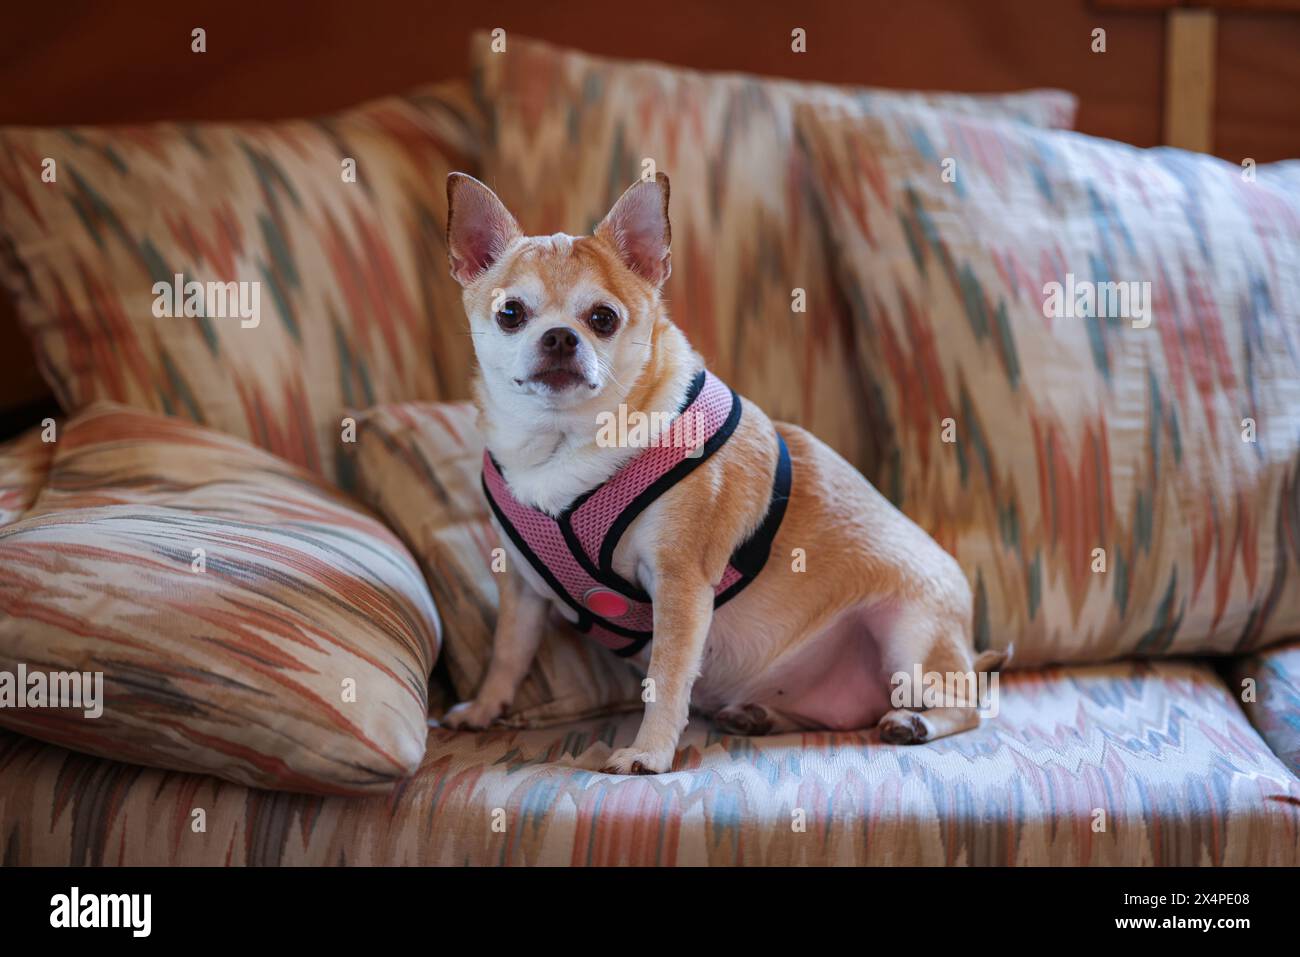 Ein kleiner Hund mit rosafarbenem Gurtzeug sitzt auf einer Couch. Die Couch ist mit einem bunten Muster bedeckt Stockfoto